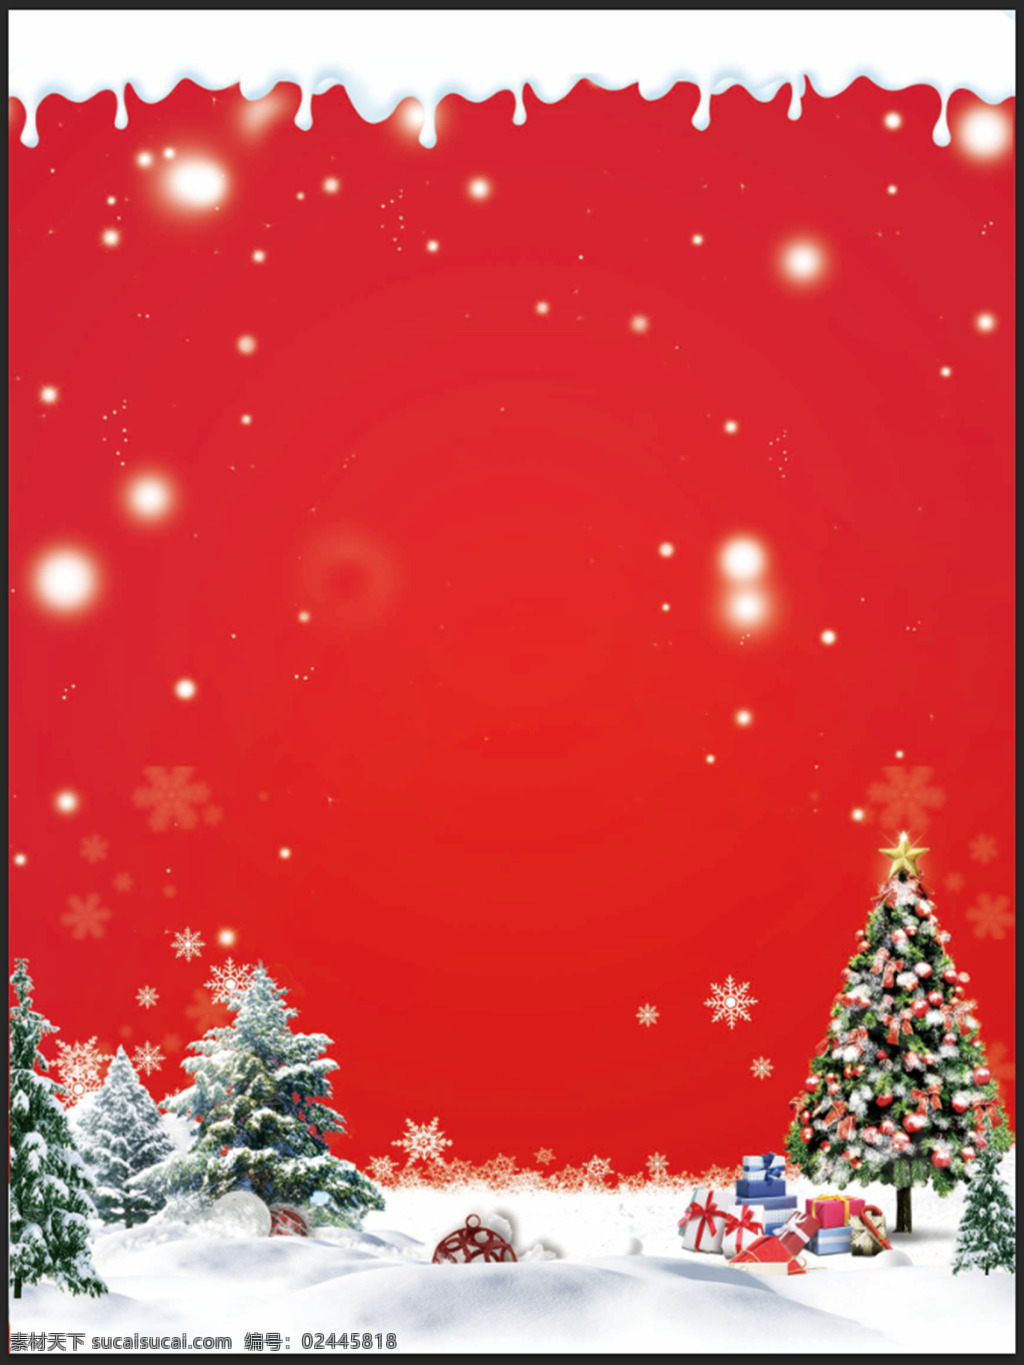 圣诞 元旦 海报 背景 招聘 配 图 印刷 喷绘 圣诞树 雪景 海报背景底板